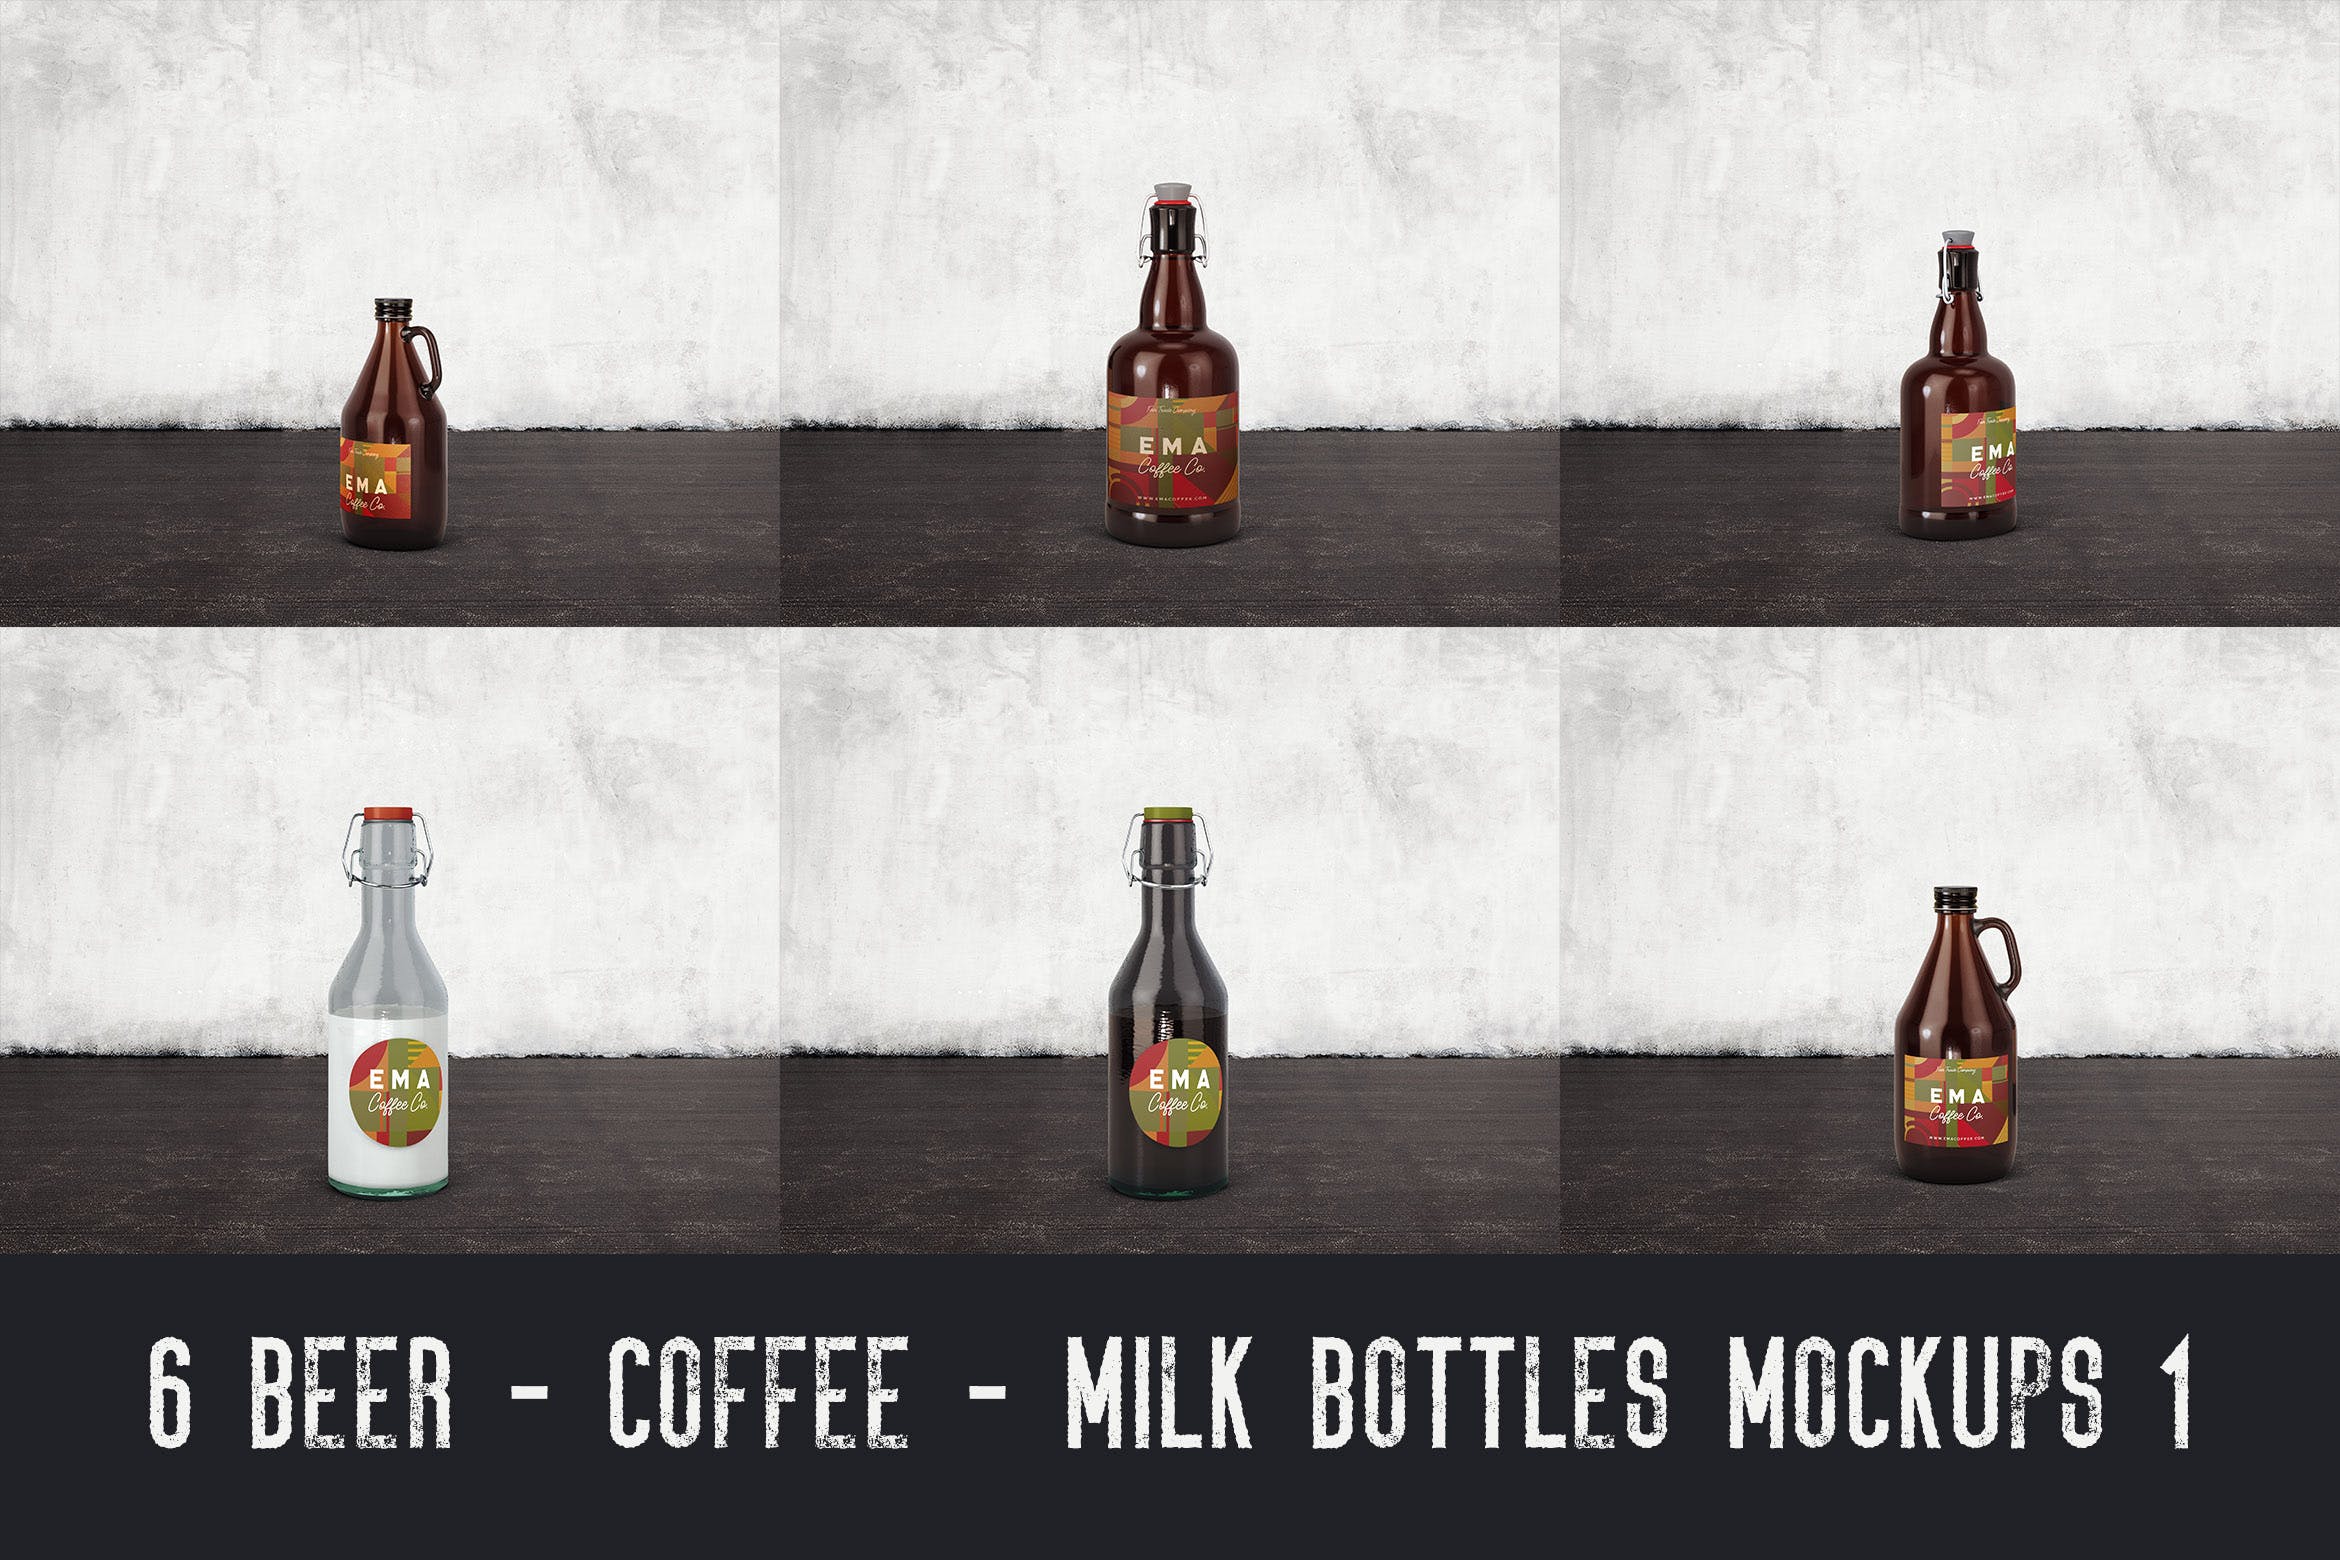 6个啤酒/咖啡/牛奶瓶外观设计素材库精选v1 6 Beer Coffee Milk Bottles Mockups 1插图